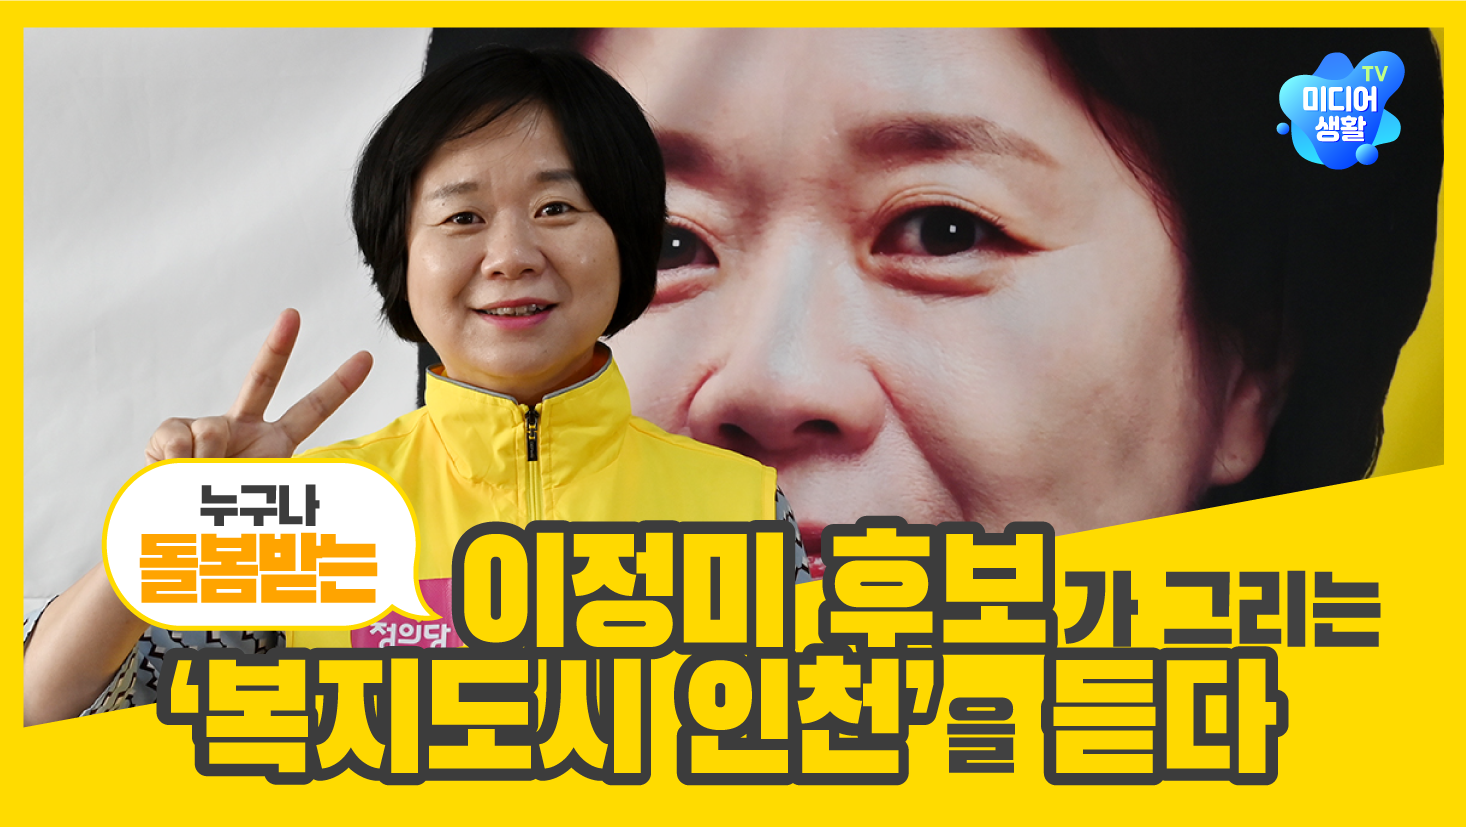 [2022 6.1 지방선거] 이정미 후보가 그리는 ‘누구나 돌봄받는 복지도시 인천’을 듣다